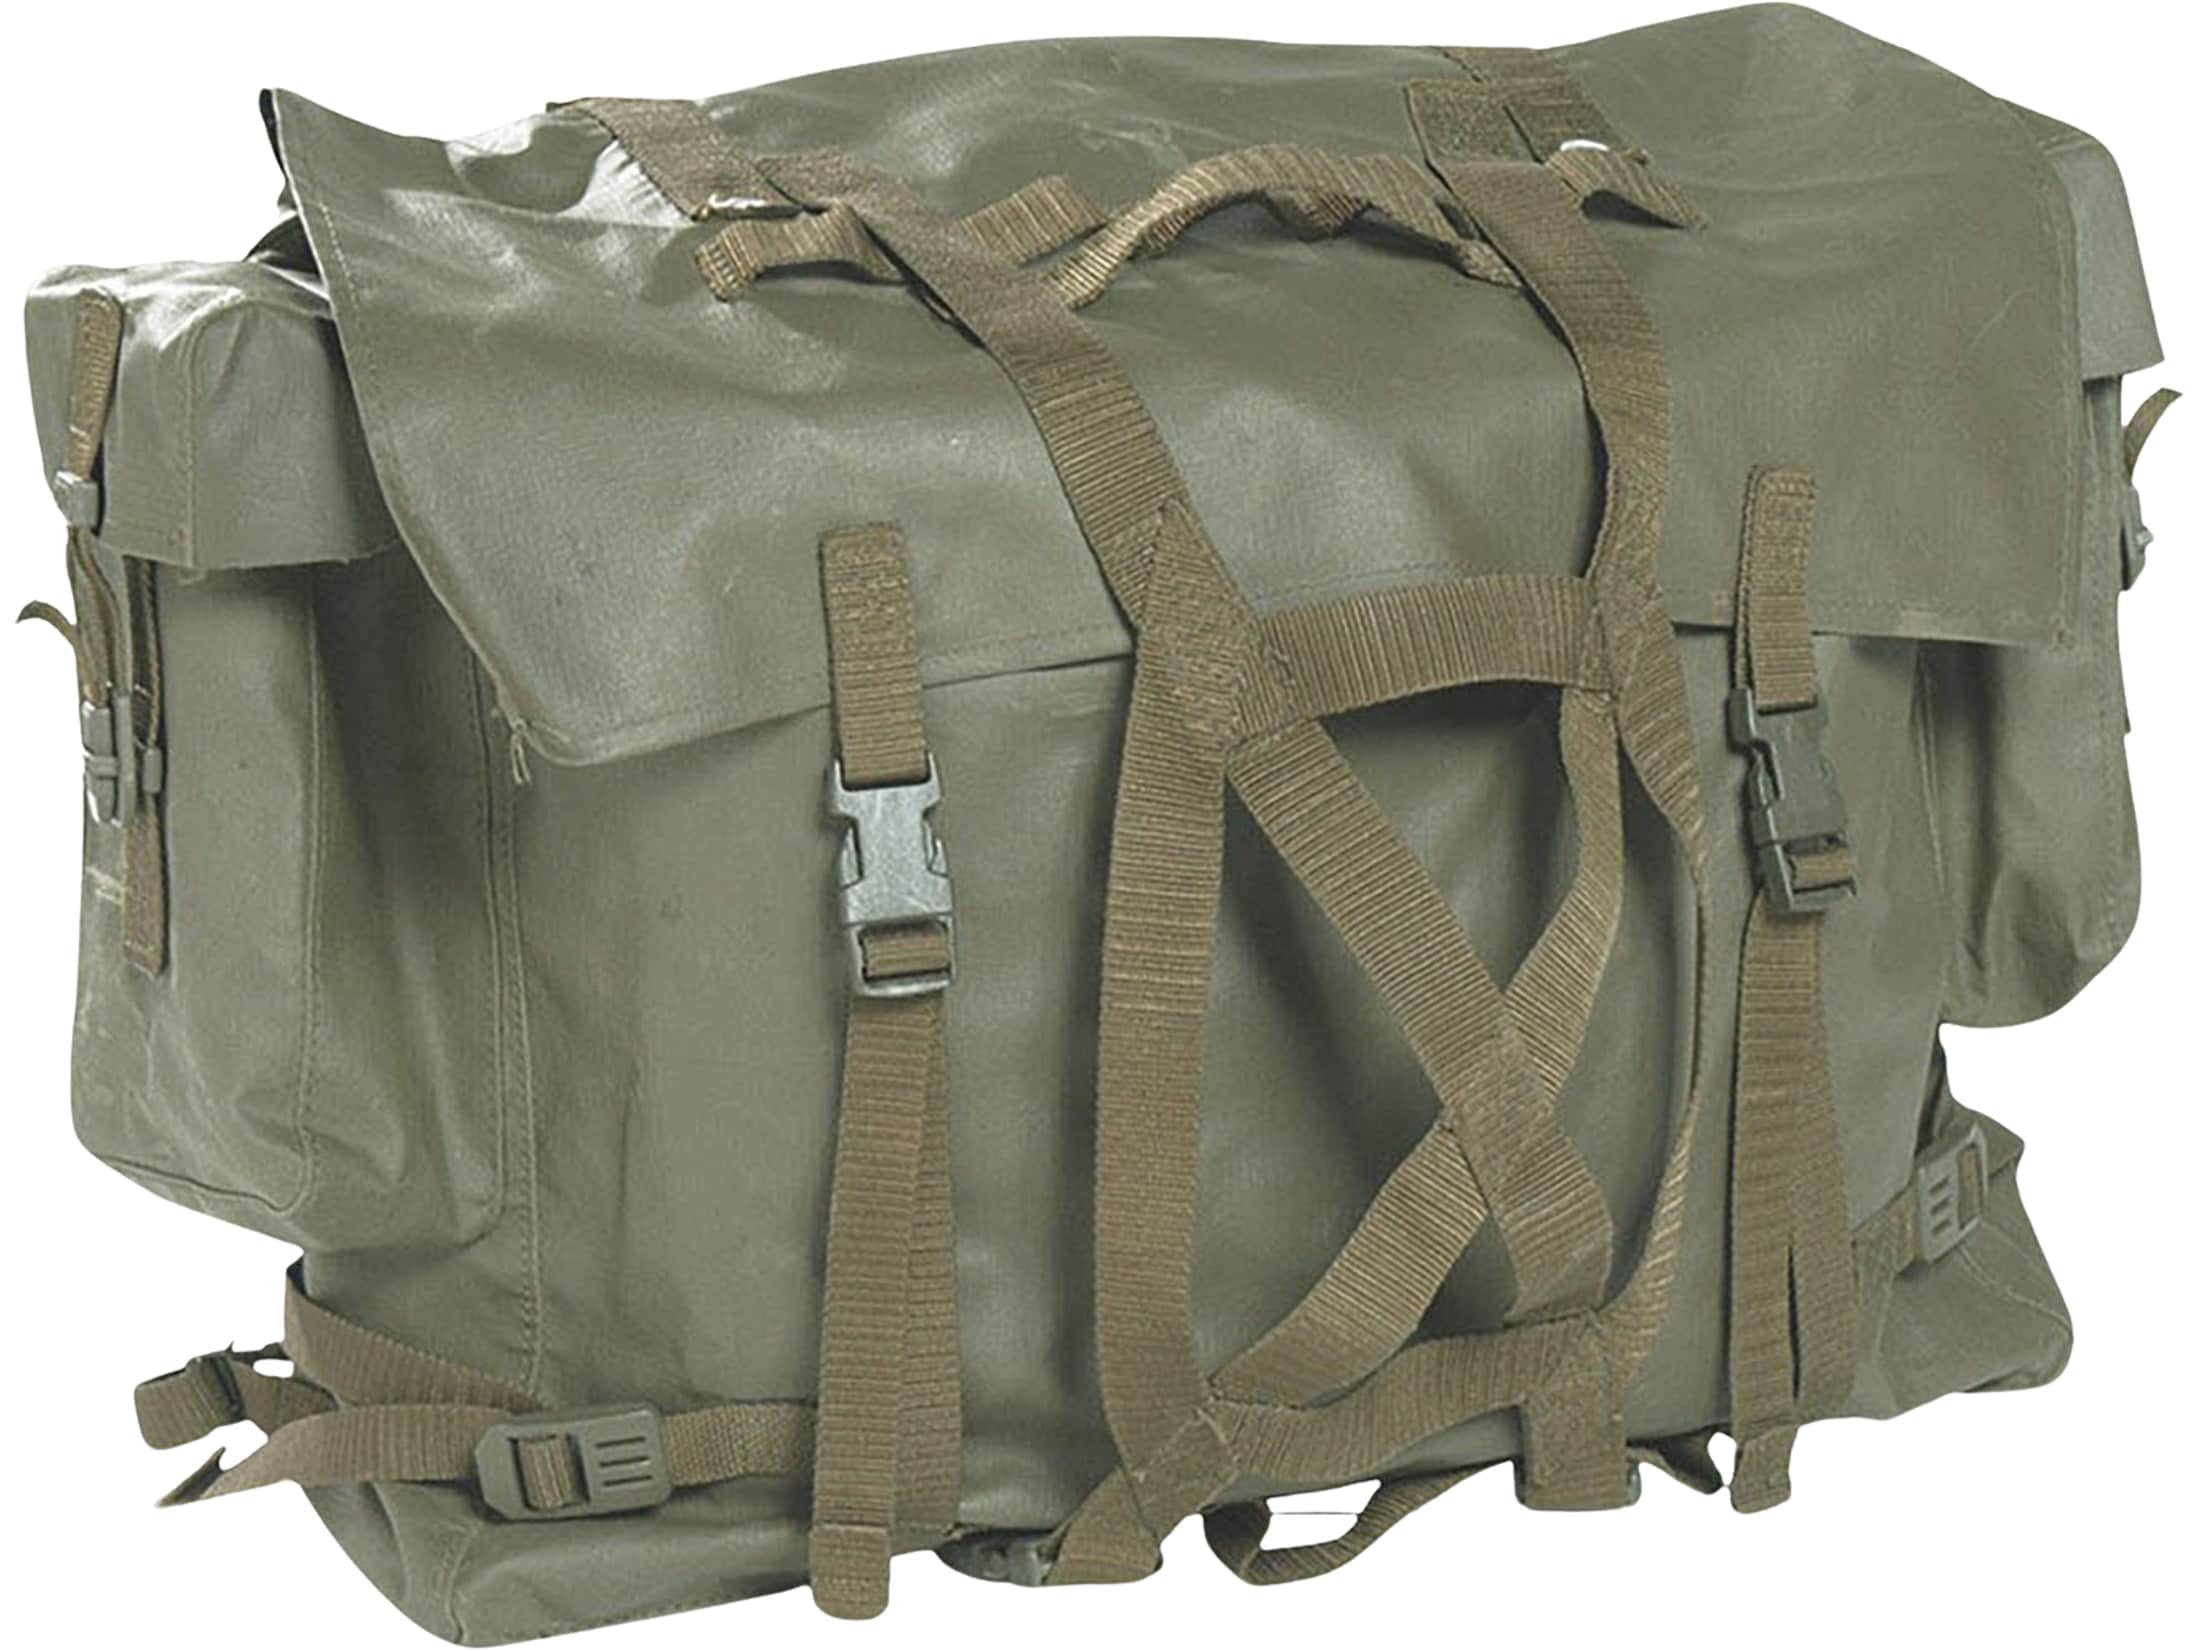 Swiss army surplus M90 WATERPROOF backpack Large Bag NEW 